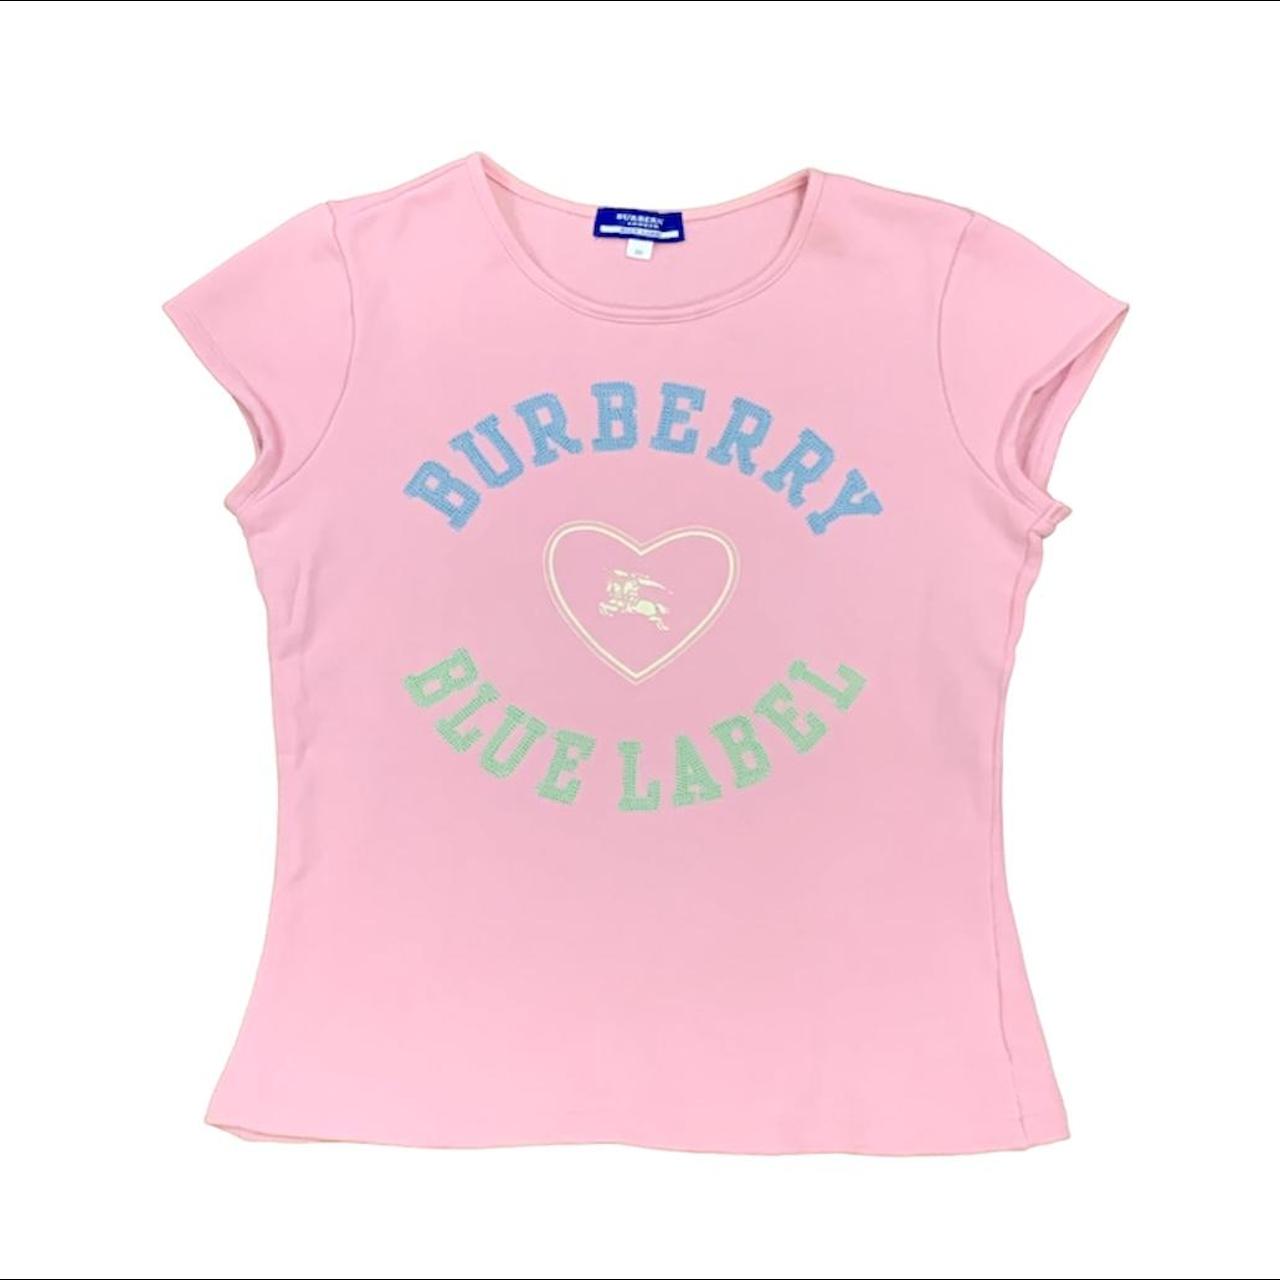 Burberry Blue Label vintage pink